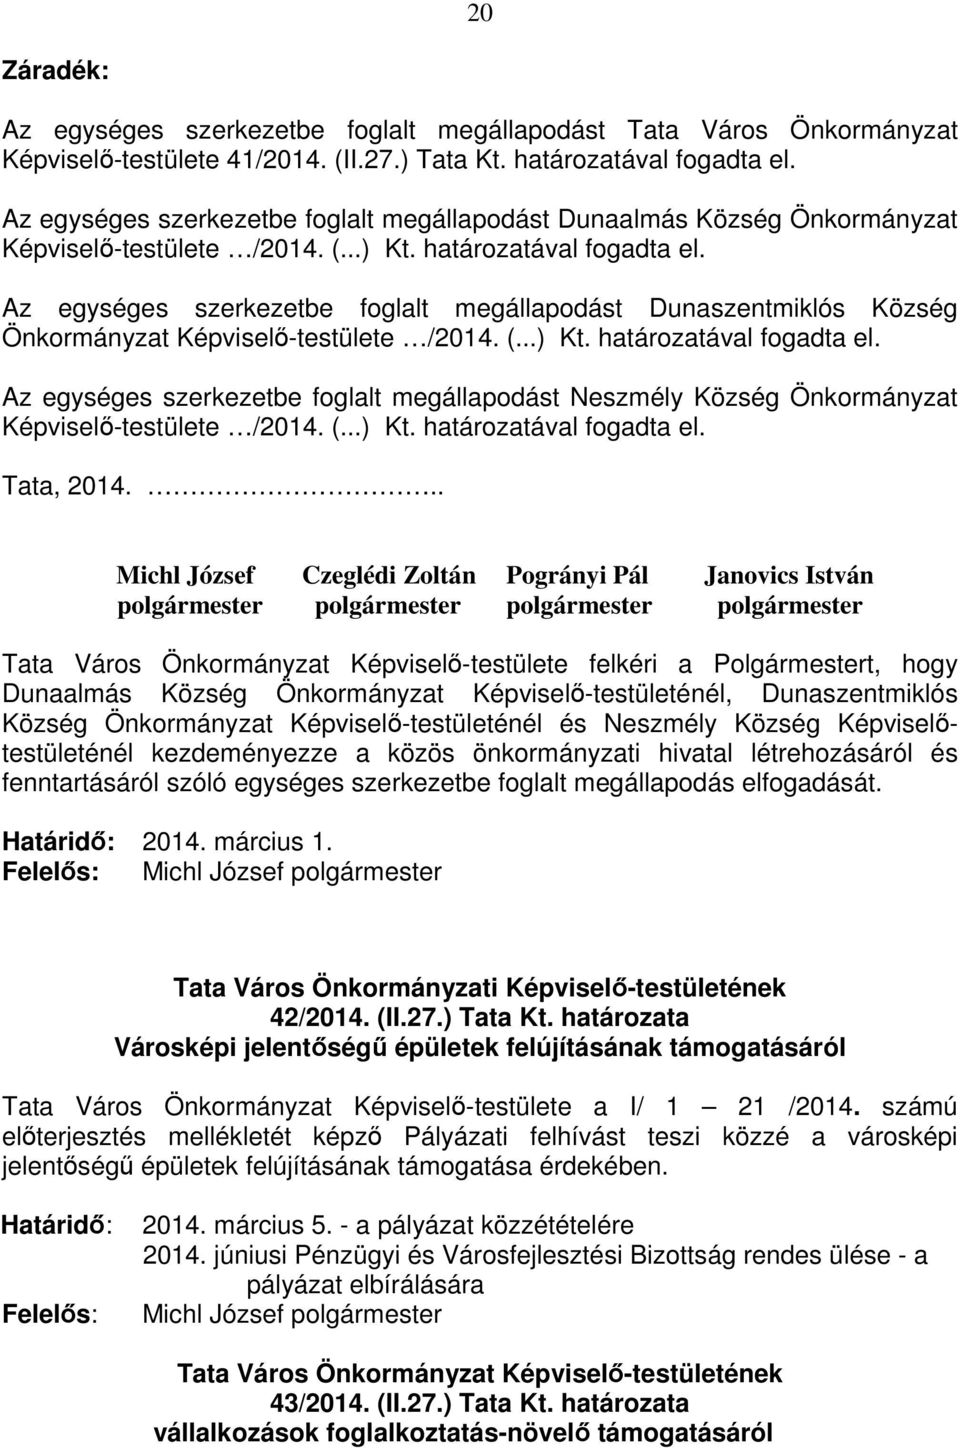 Az egységes szerkezetbe foglalt megállapodást Dunaszentmiklós Község Önkormányzat Képviselő-testülete /2014. (...) Kt. határozatával fogadta el.